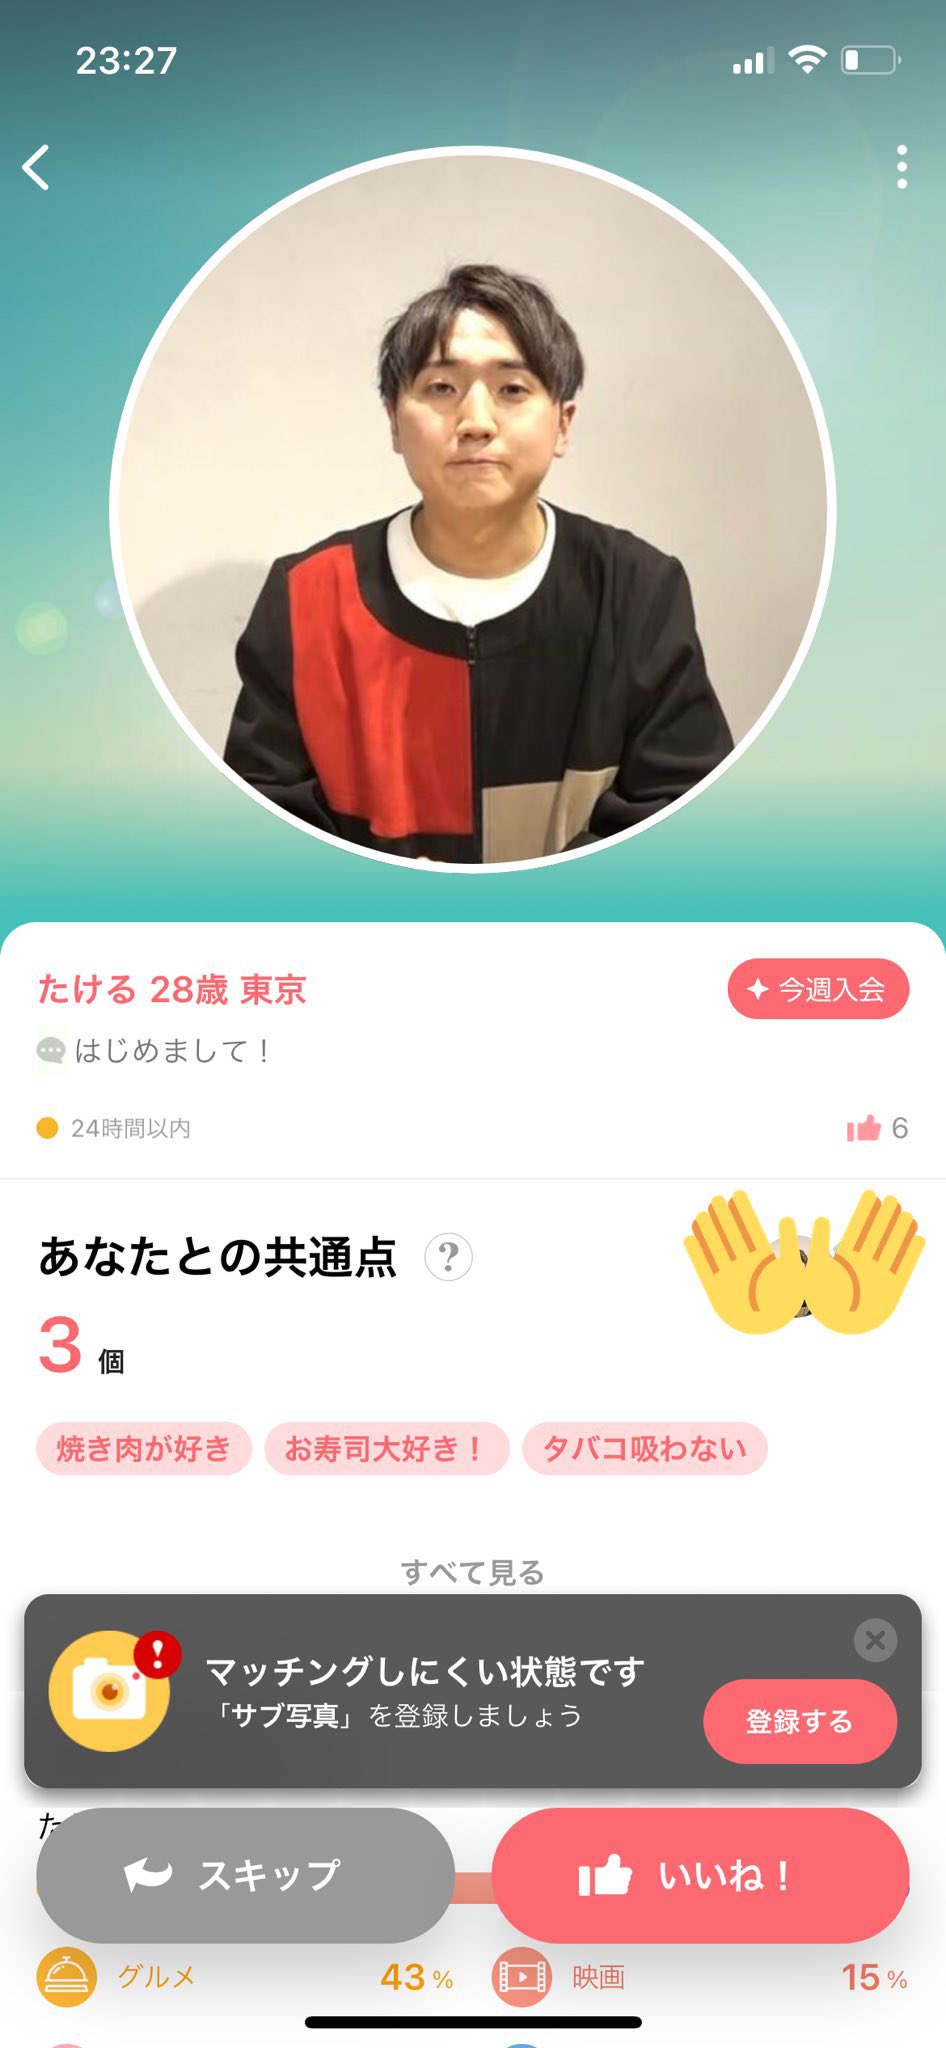 コロチキ西野 マッチングアプリに写真無断使用されボヤき とても恥ずかしいです Oricon News